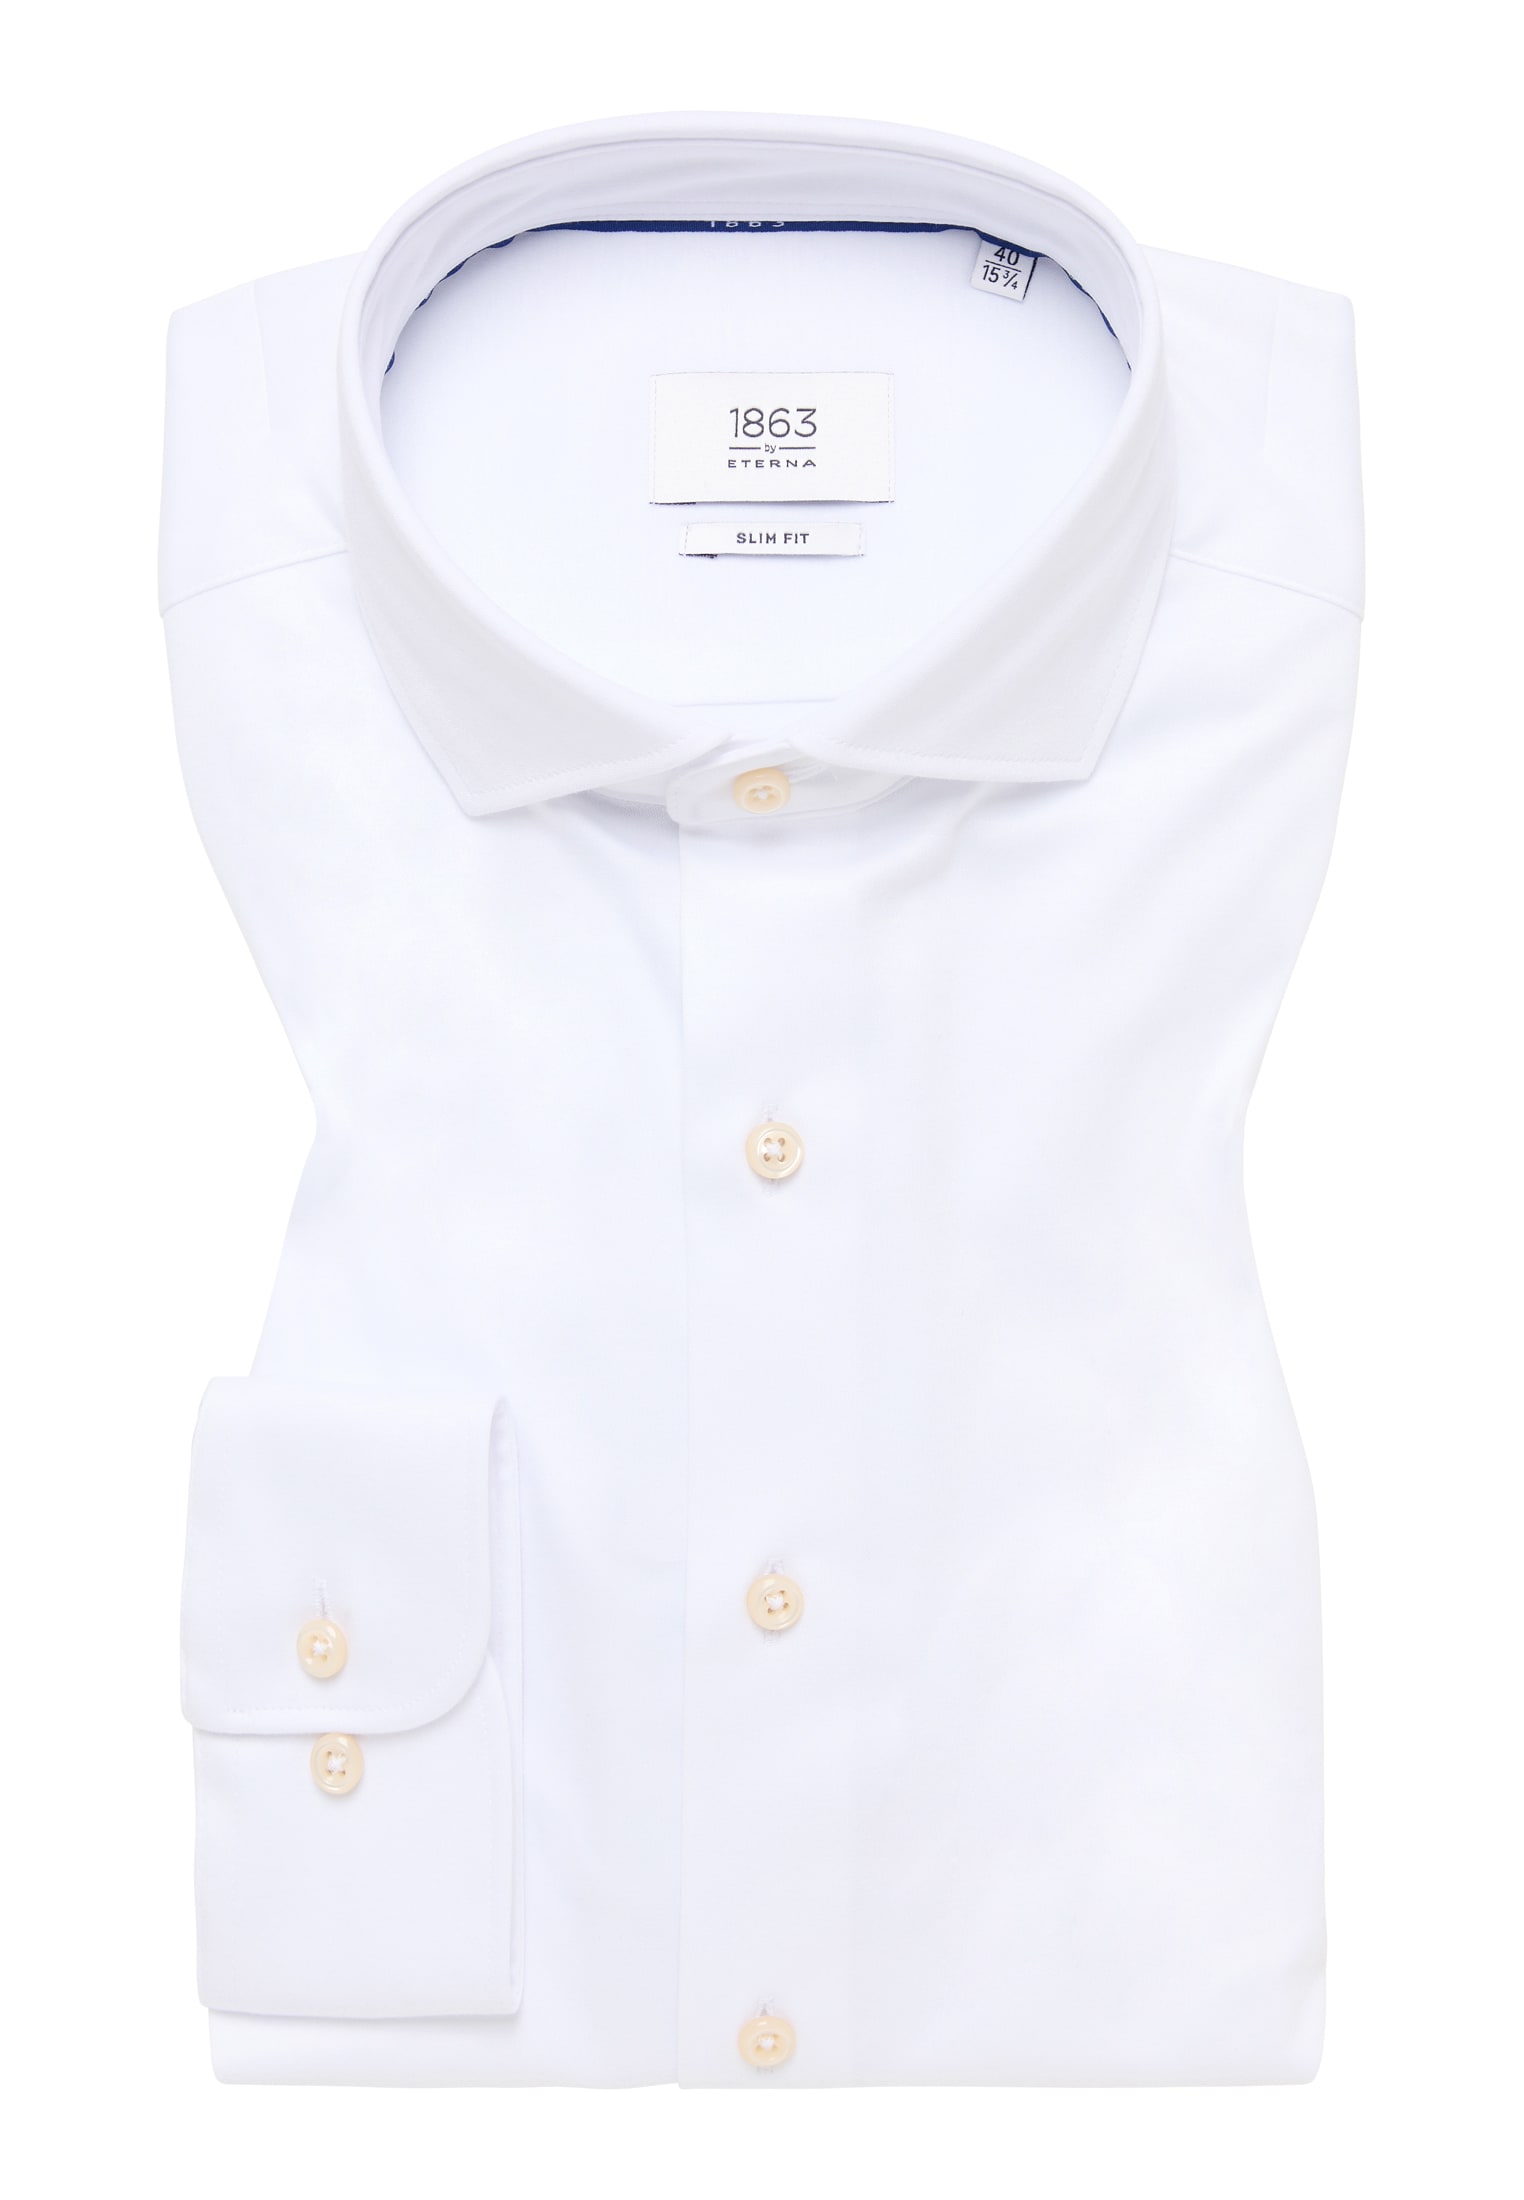 | | | weiß Langarm in 40 | 1SH00378-00-01-40-1/1 FIT unifarben weiß Shirt Jersey SLIM